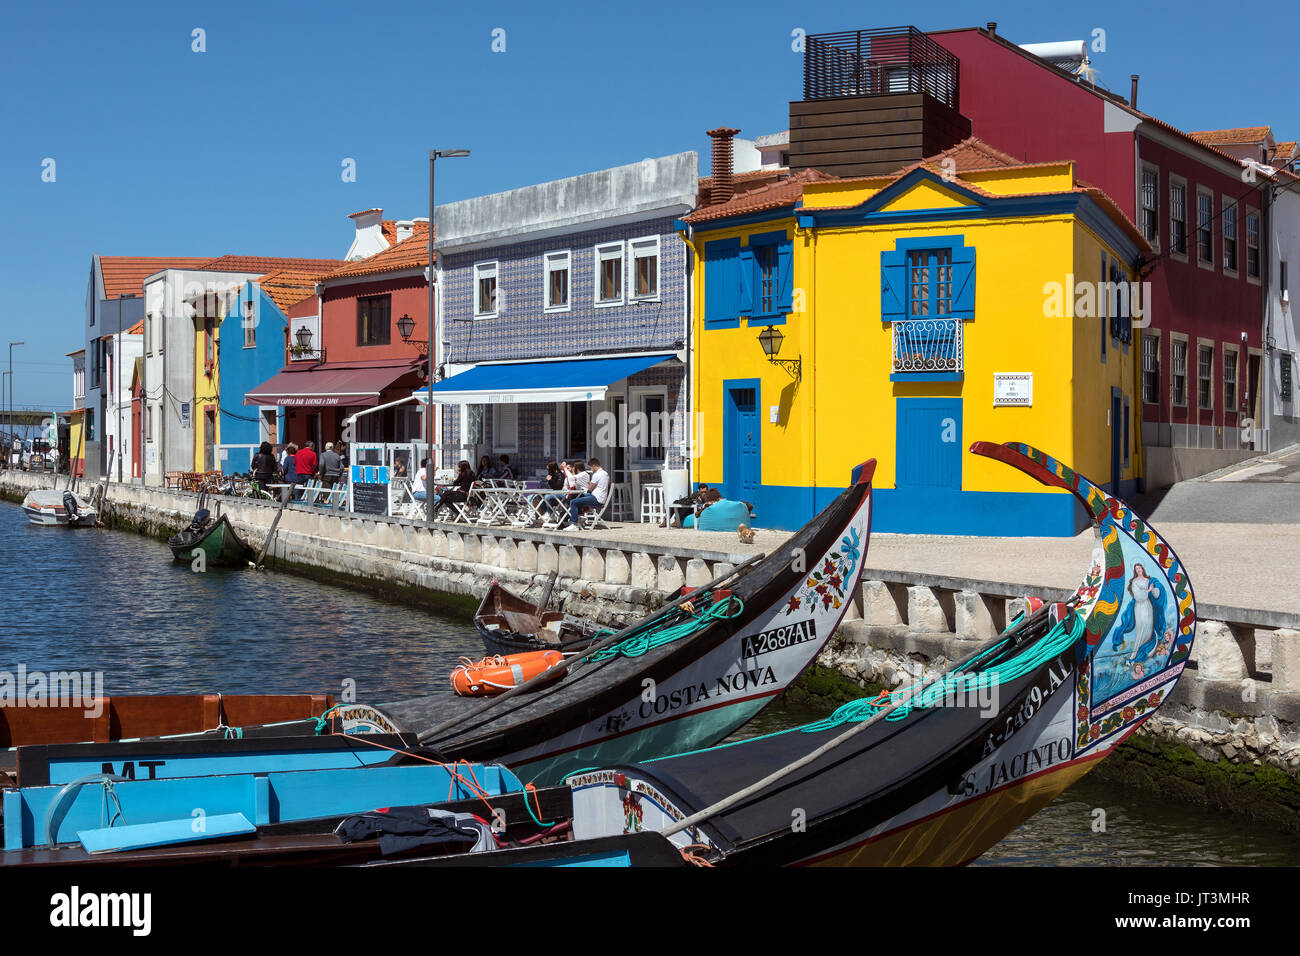 Il porto di Aveiro, conosciuta come la Venezia del Portogallo, è una destinazione turistica popolare nella regione di centro del Portogallo. Foto Stock